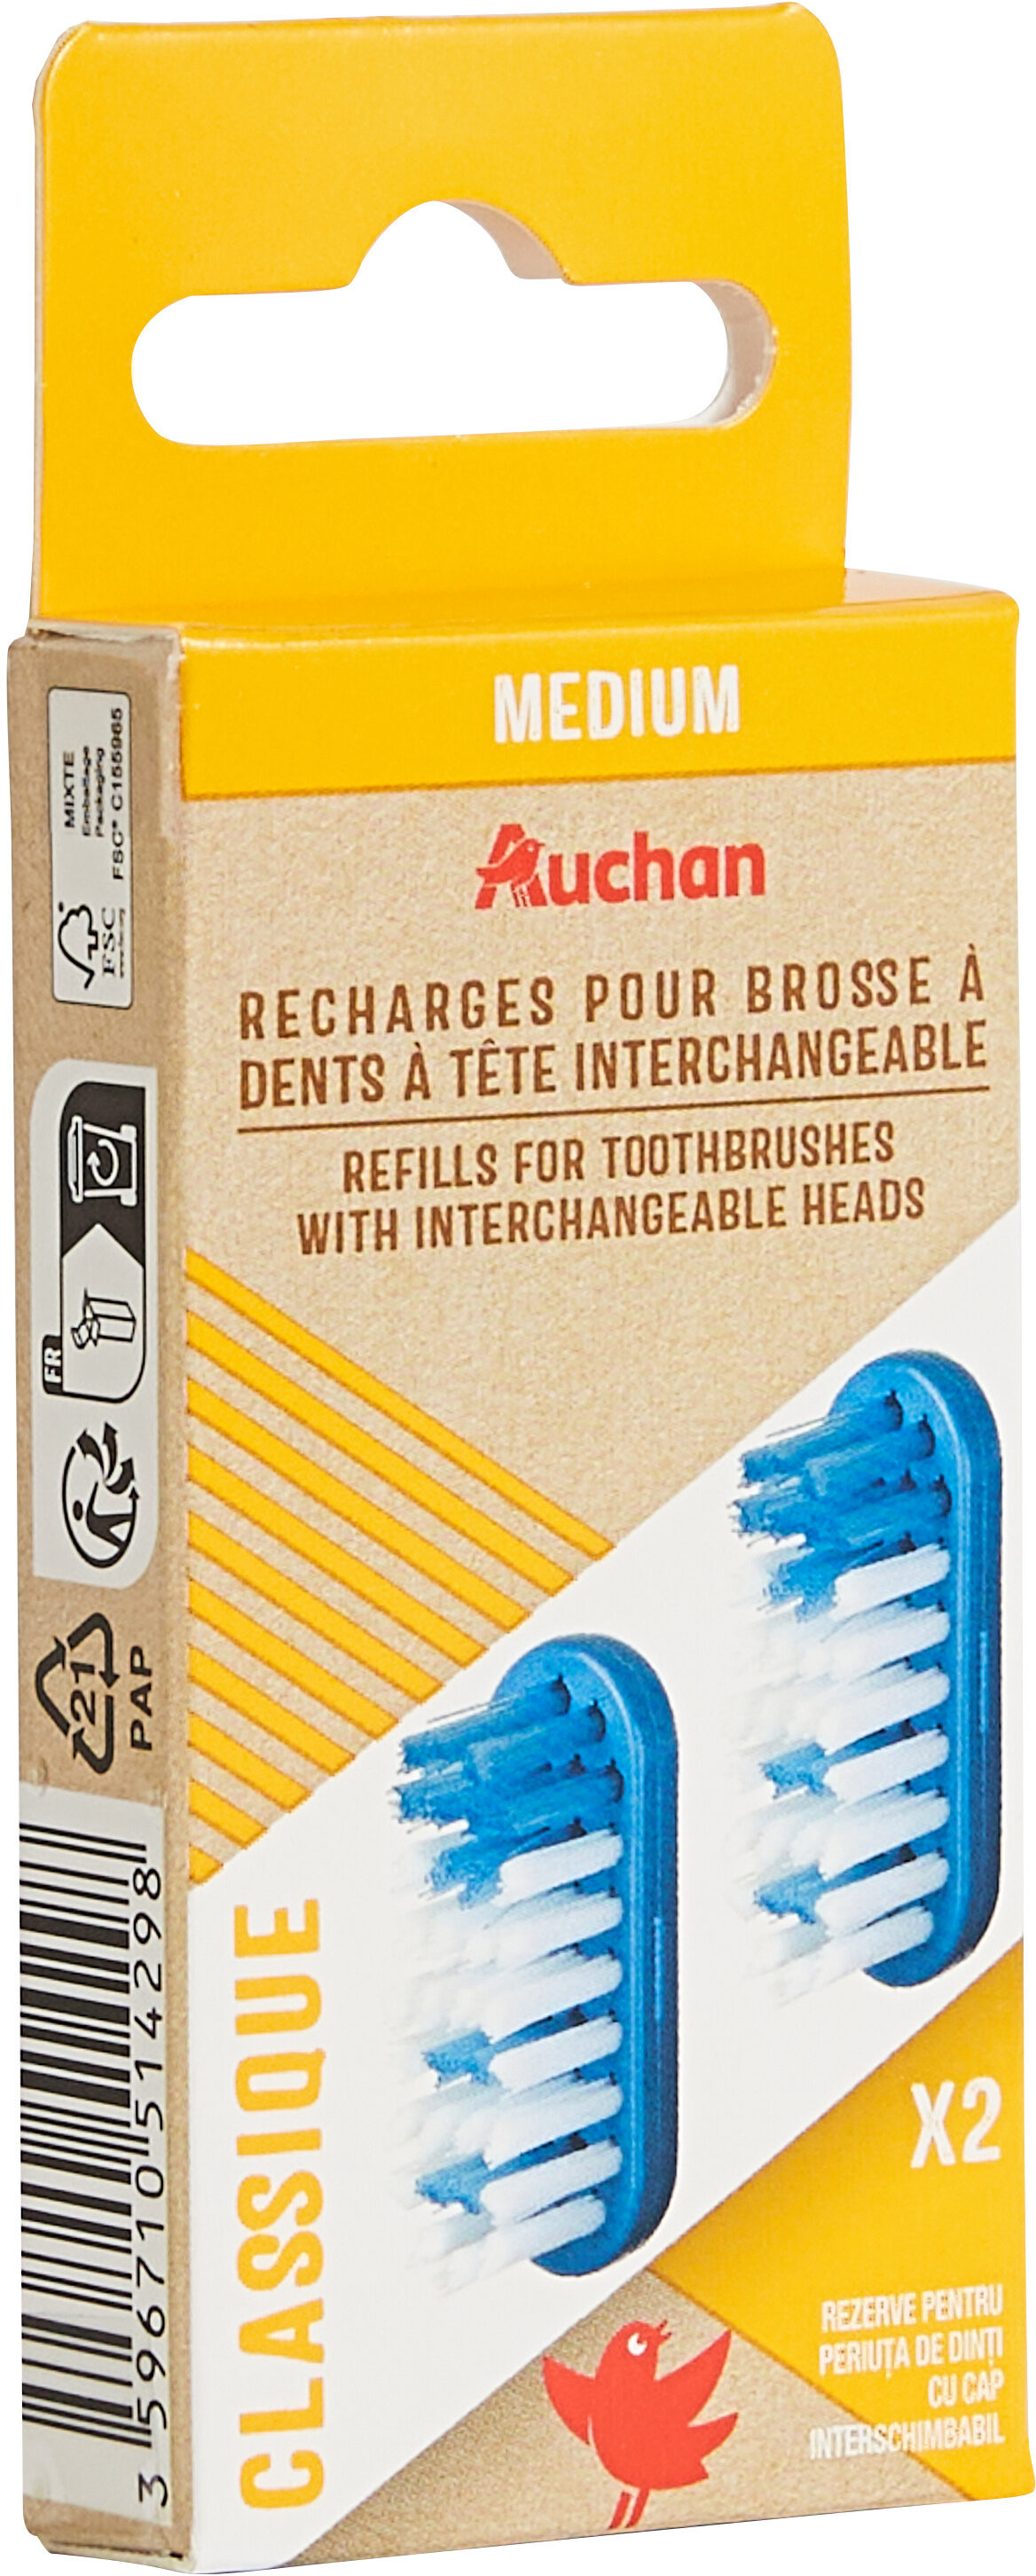 Recharges pour brosse à dents à tête interchangeable Classique - Product - fr